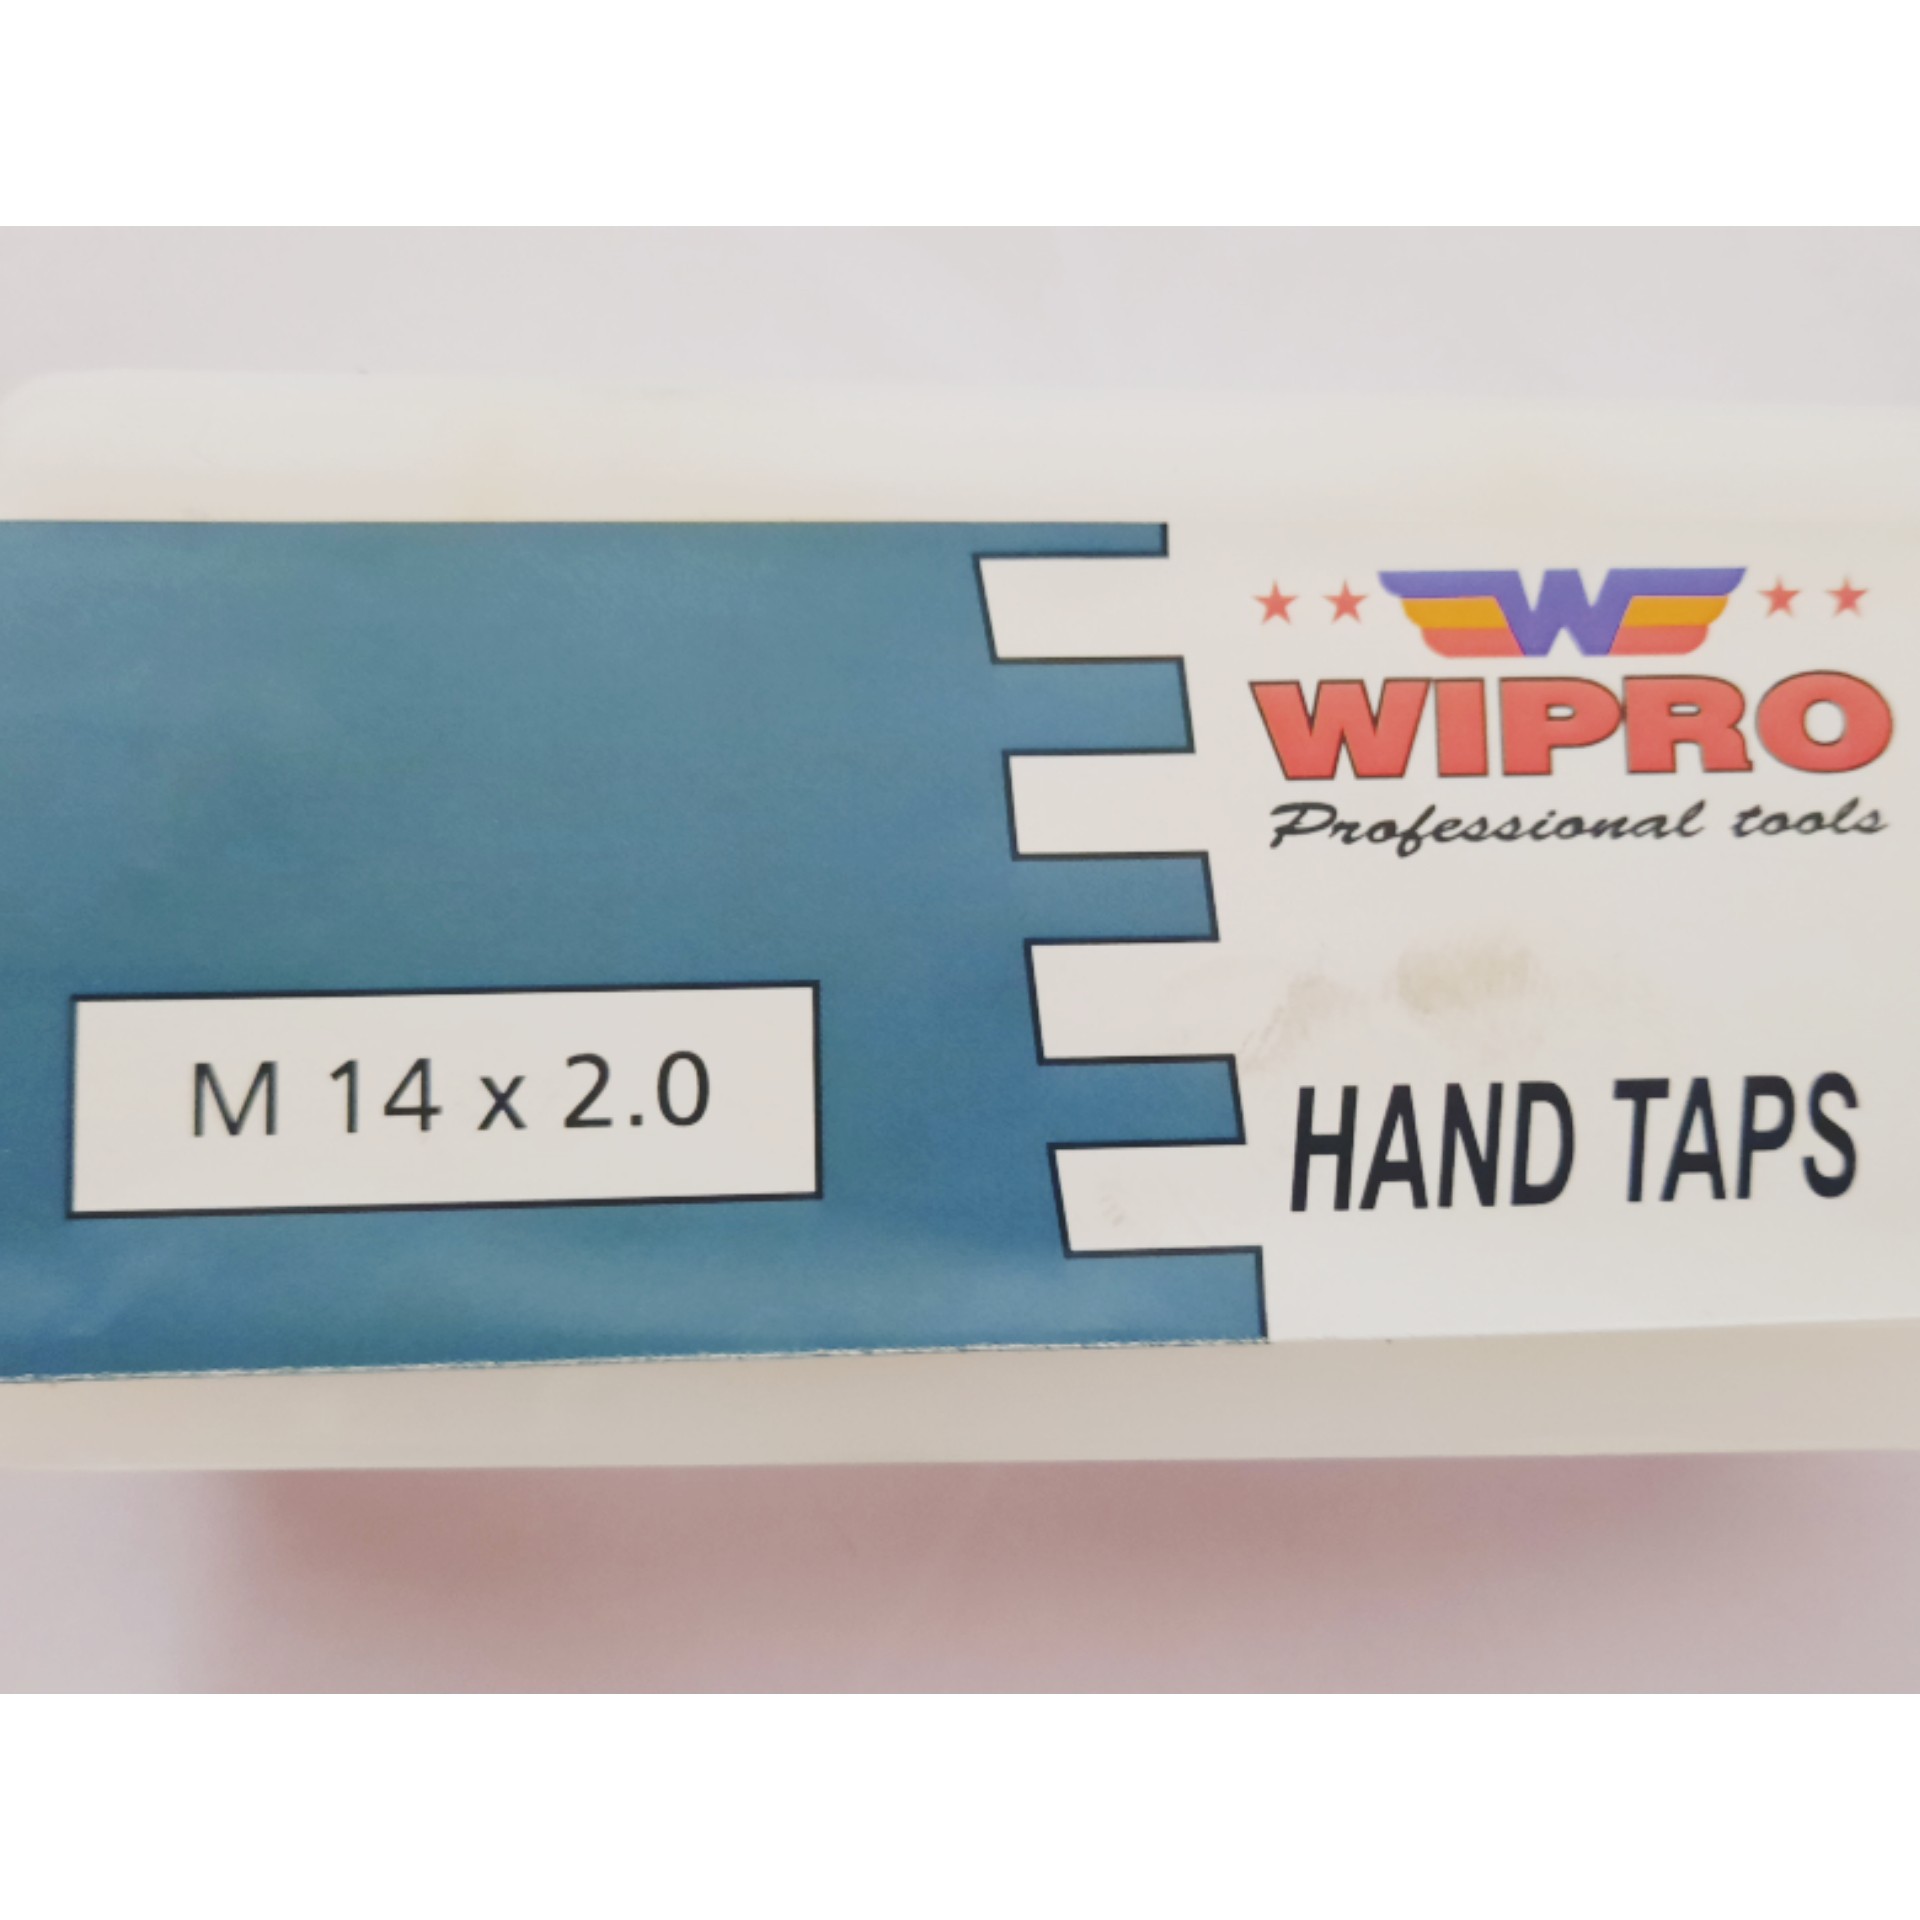 Hand Taps Wipro M14x2 4